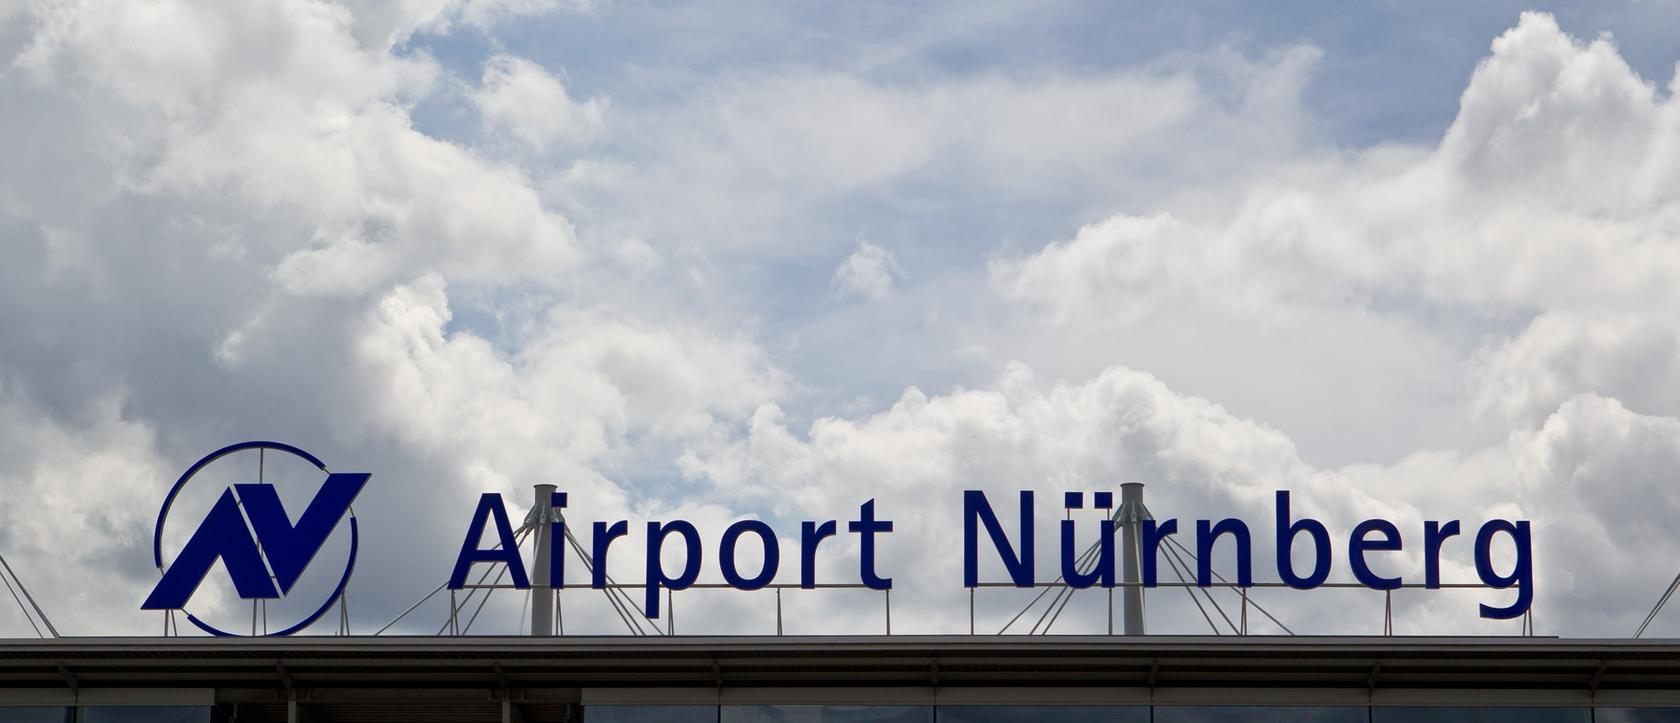 Der Airport Nürnberg wird zukünftig "Albrecht-Dürer-Flughafen" heißen.